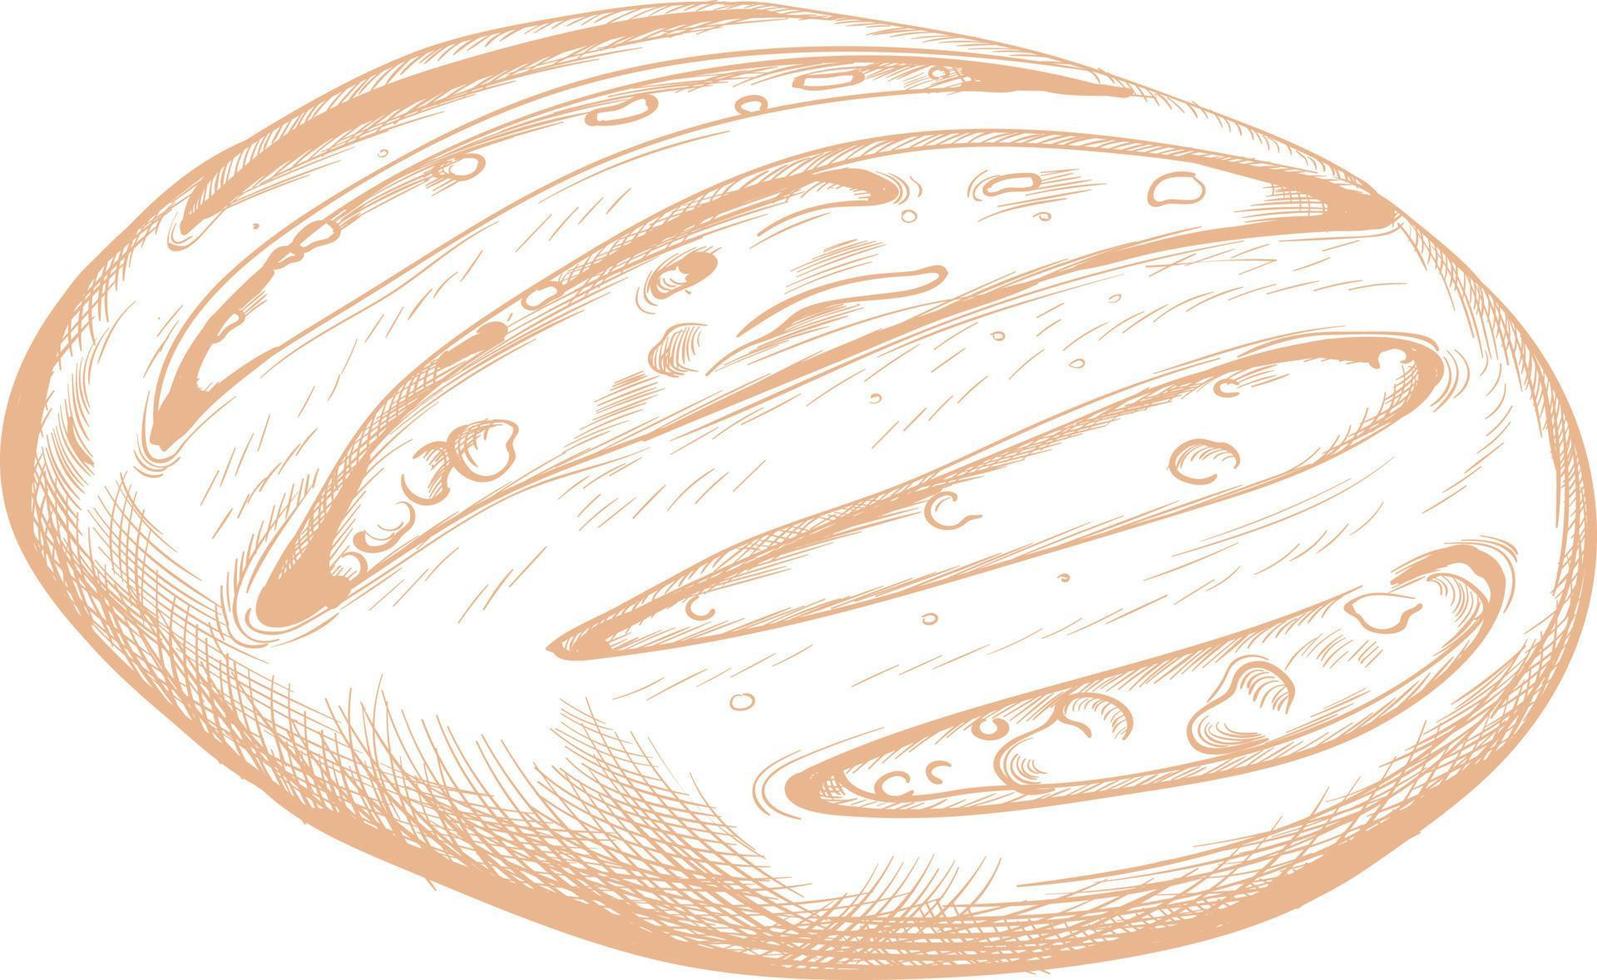 Brot für Lebensmittel gezeichnete Skizze. vektor